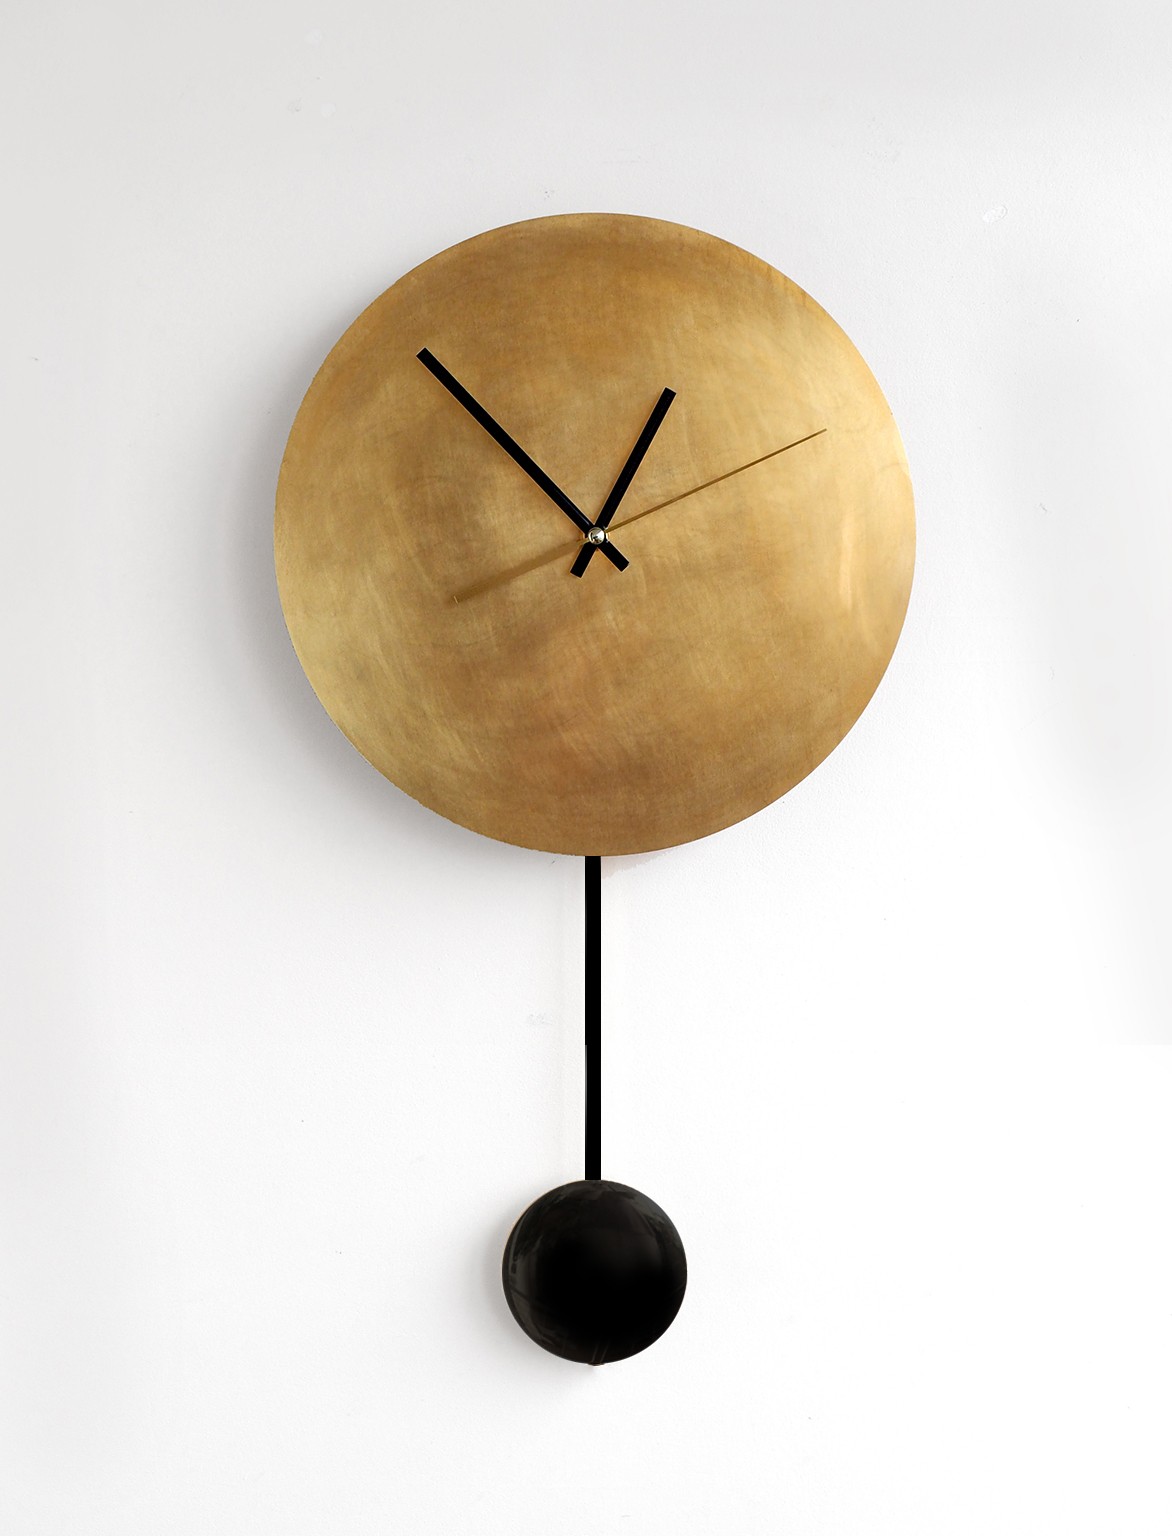 История часов: маятниковые часы – интернет-магазин наручных часов эталон62.рф